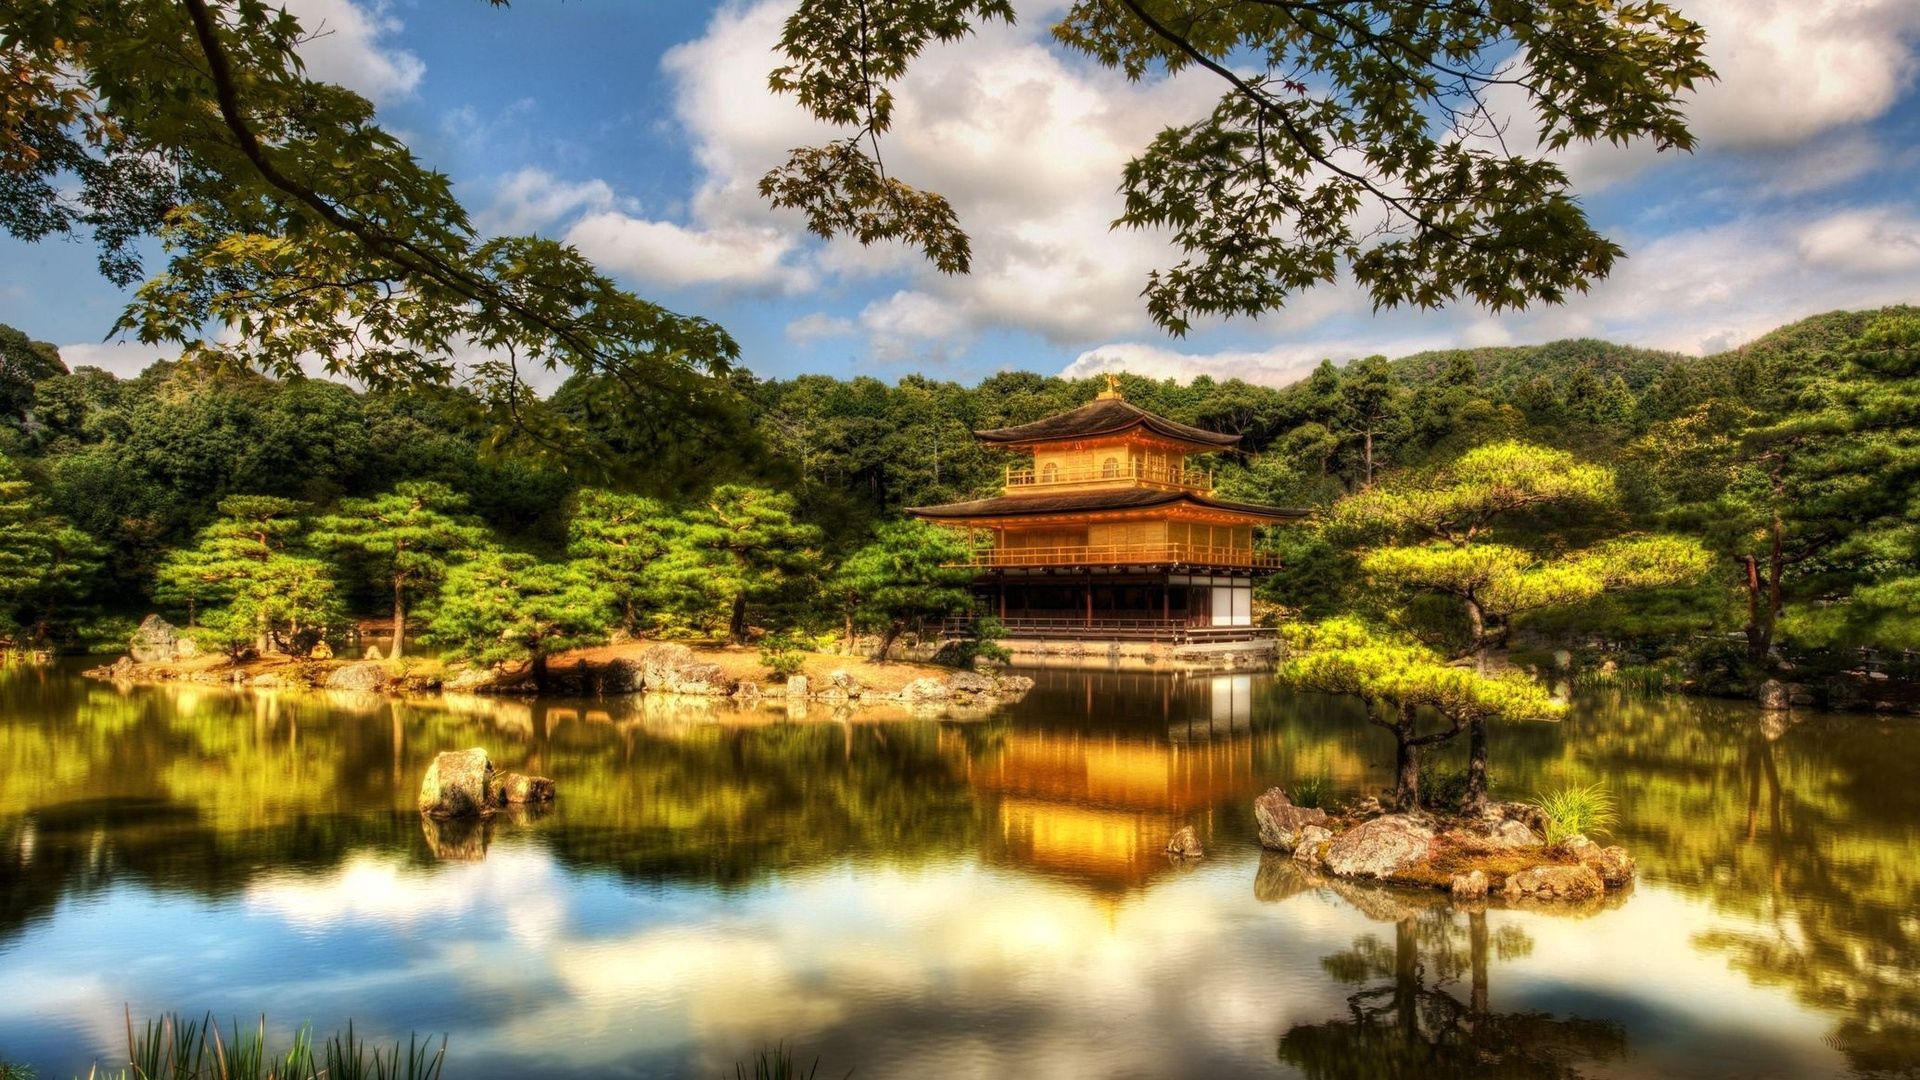 Download wallpaper 1920x1080 ryoanji zen garden, japan, mirabell, gardens,  austria full hd, hdtv, fhd, 1080p hd background